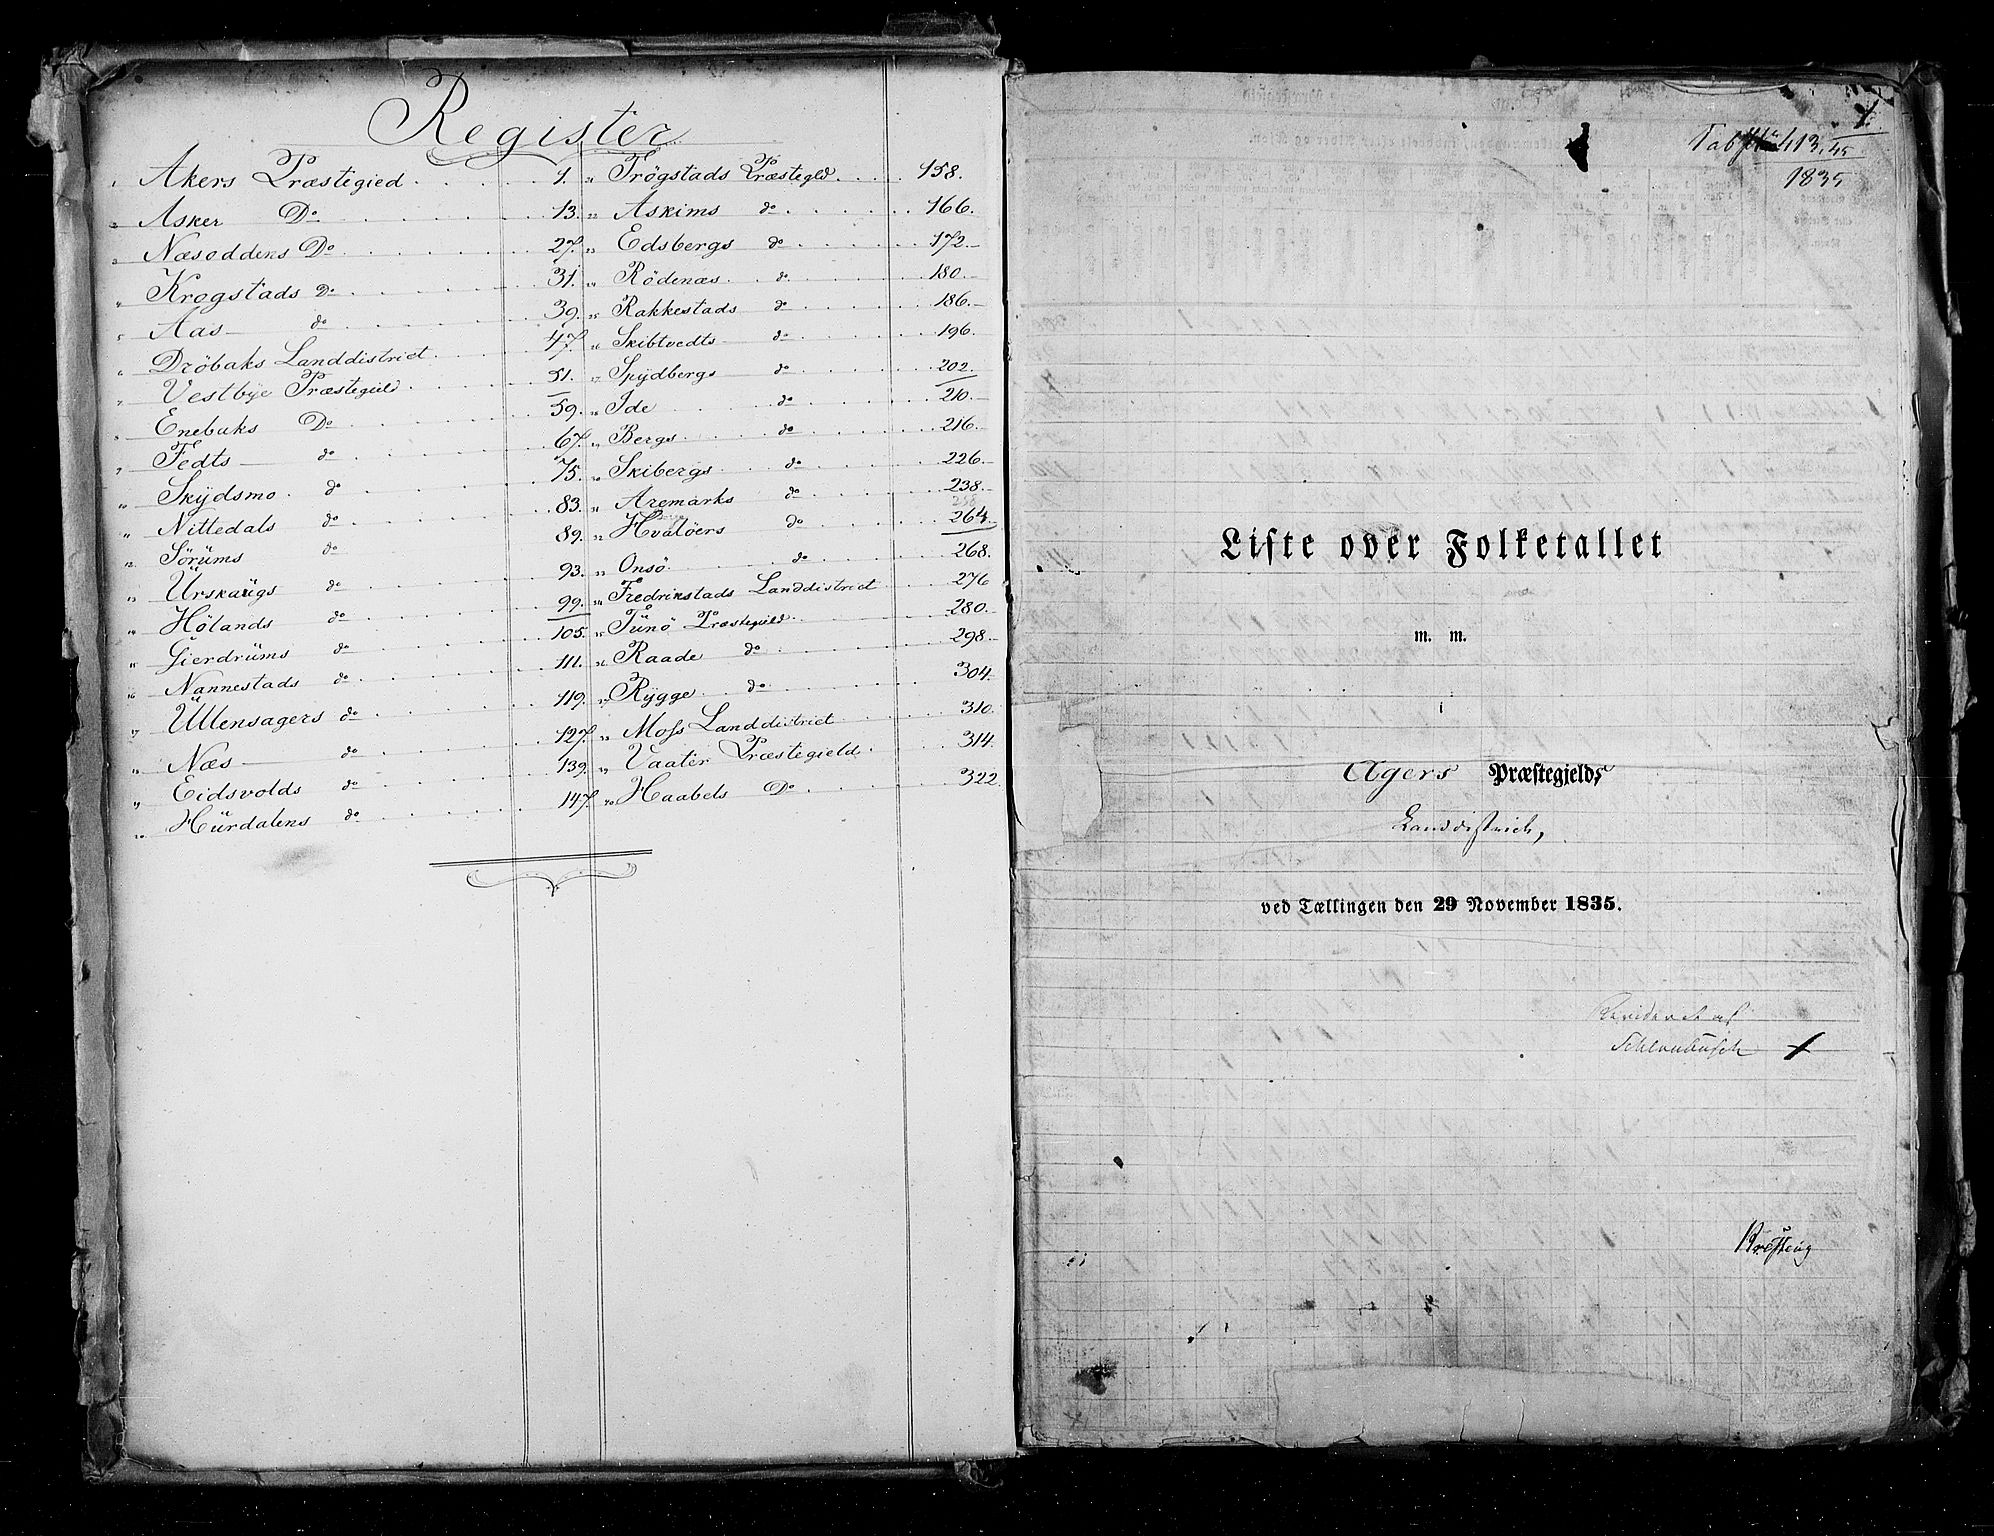 RA, Census 1835, vol. 2: Akershus amt og Smålenenes amt, 1835, p. 1